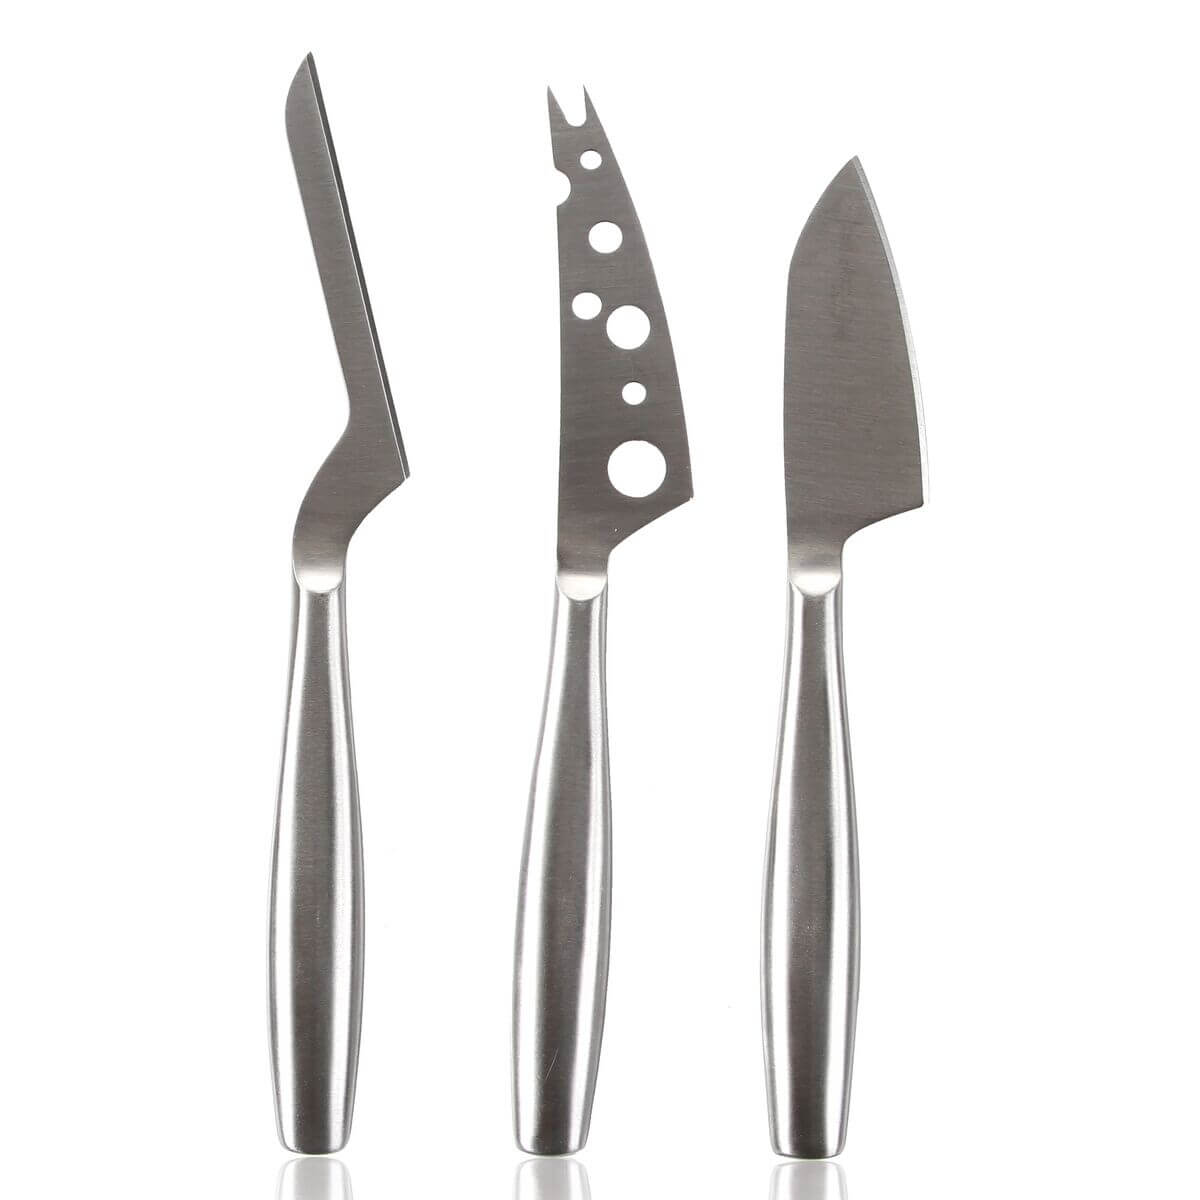 Couteau de cuisine les gourmets, garantie lave-vaisselle - 25 cm